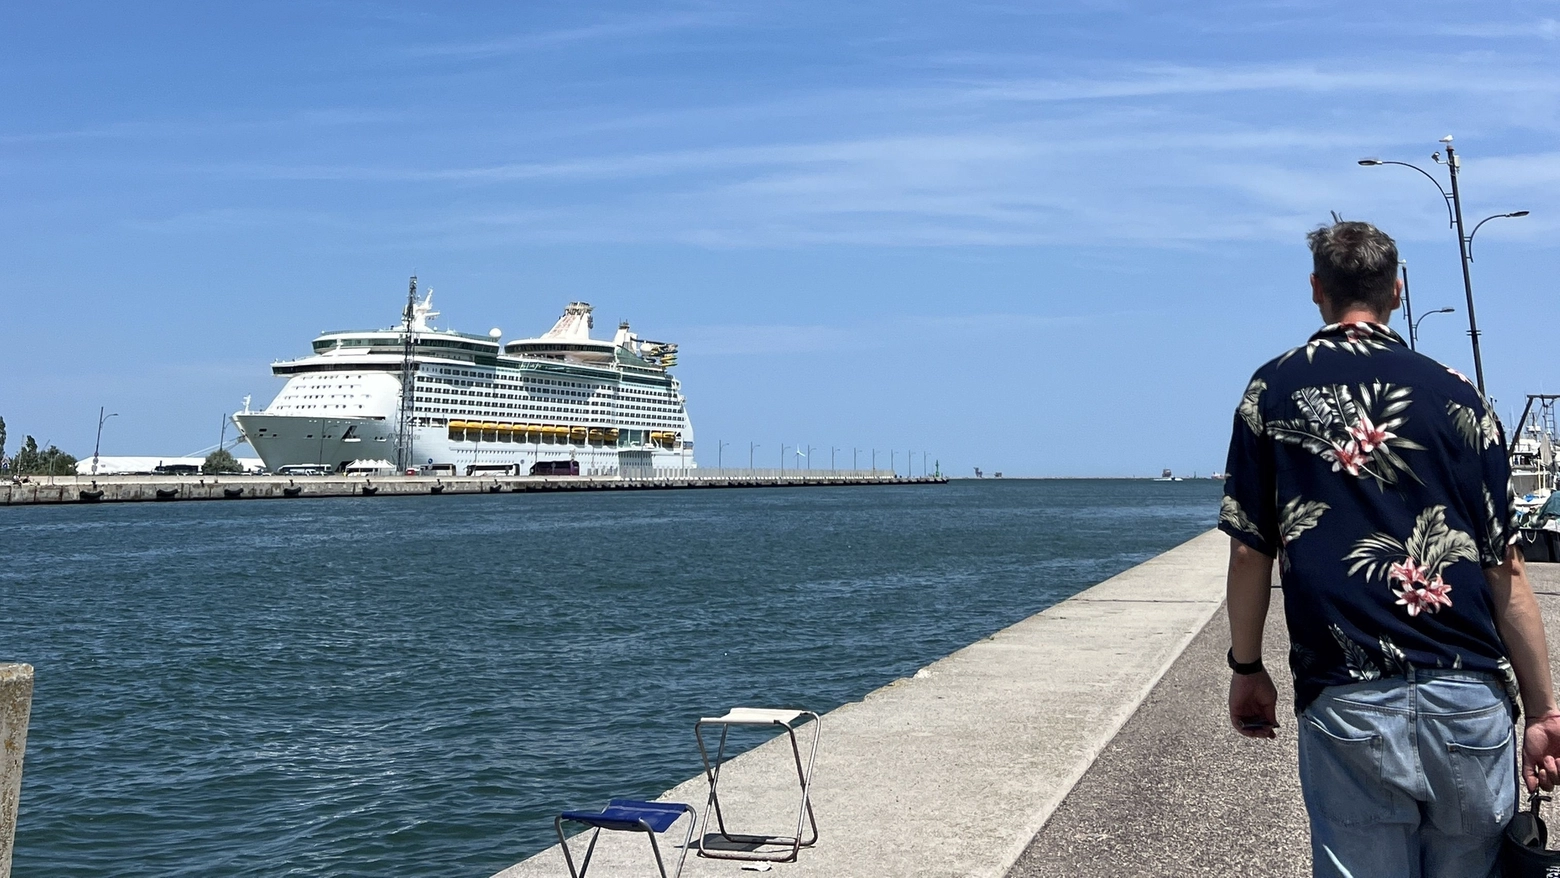 È attesa anche la firma del contratto tra il terminalista Ravenna Civitas Cruise Port e la società Ar.Co. Lavori che si è aggiudicata la realizzazione della nuova stazione marittima